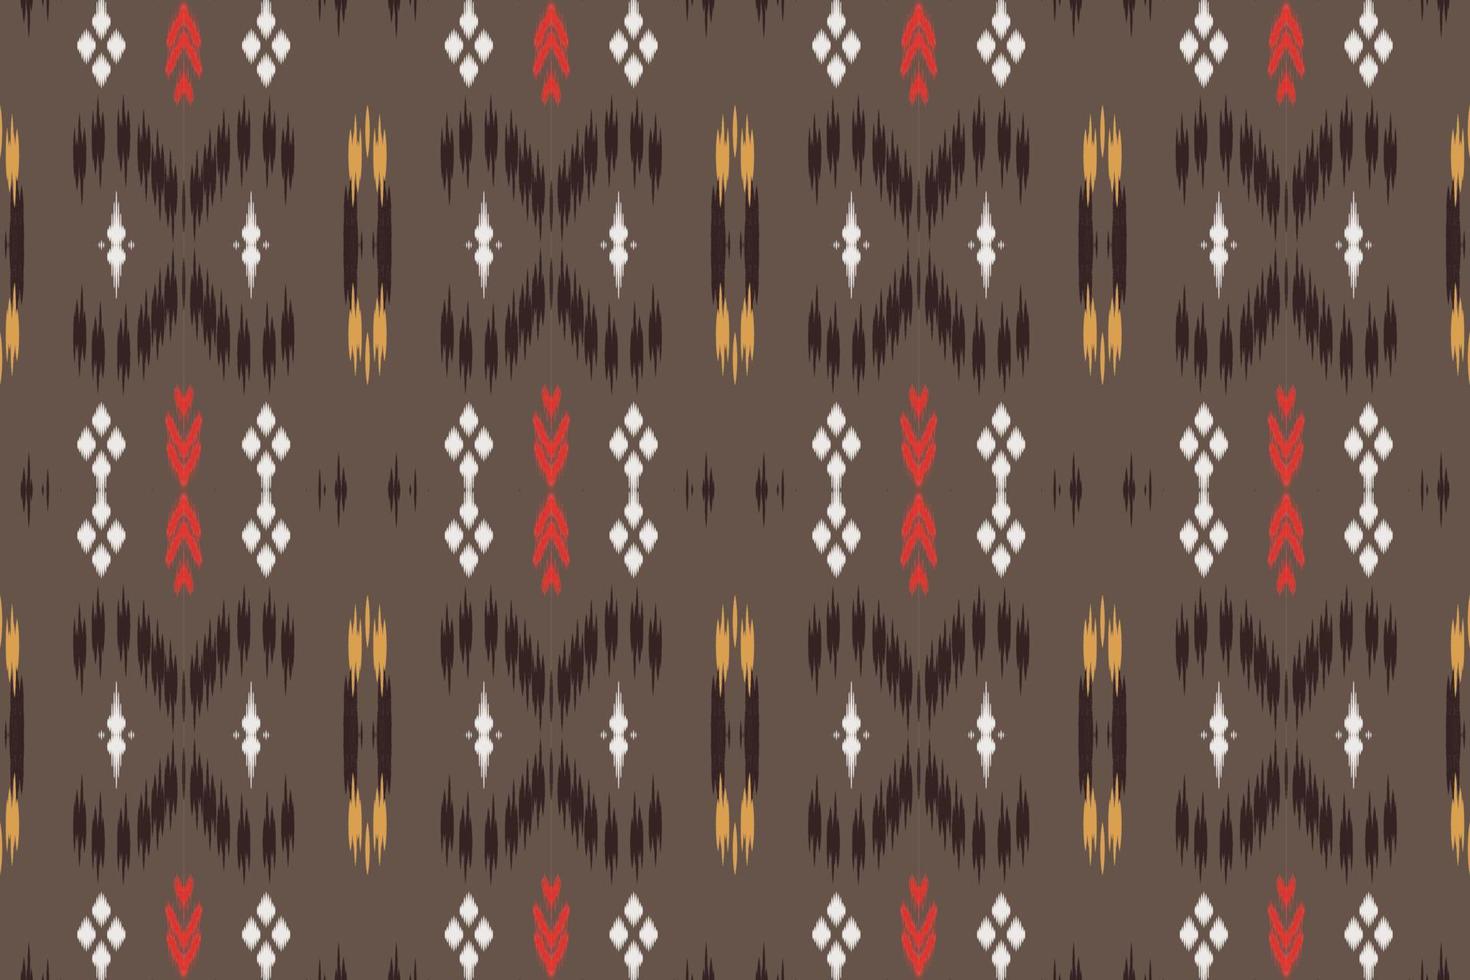 motif ikat chevron tribal africain bornéo scandinave batik bohème texture numérique vecteur conception pour impression saree kurti tissu brosse symboles échantillons